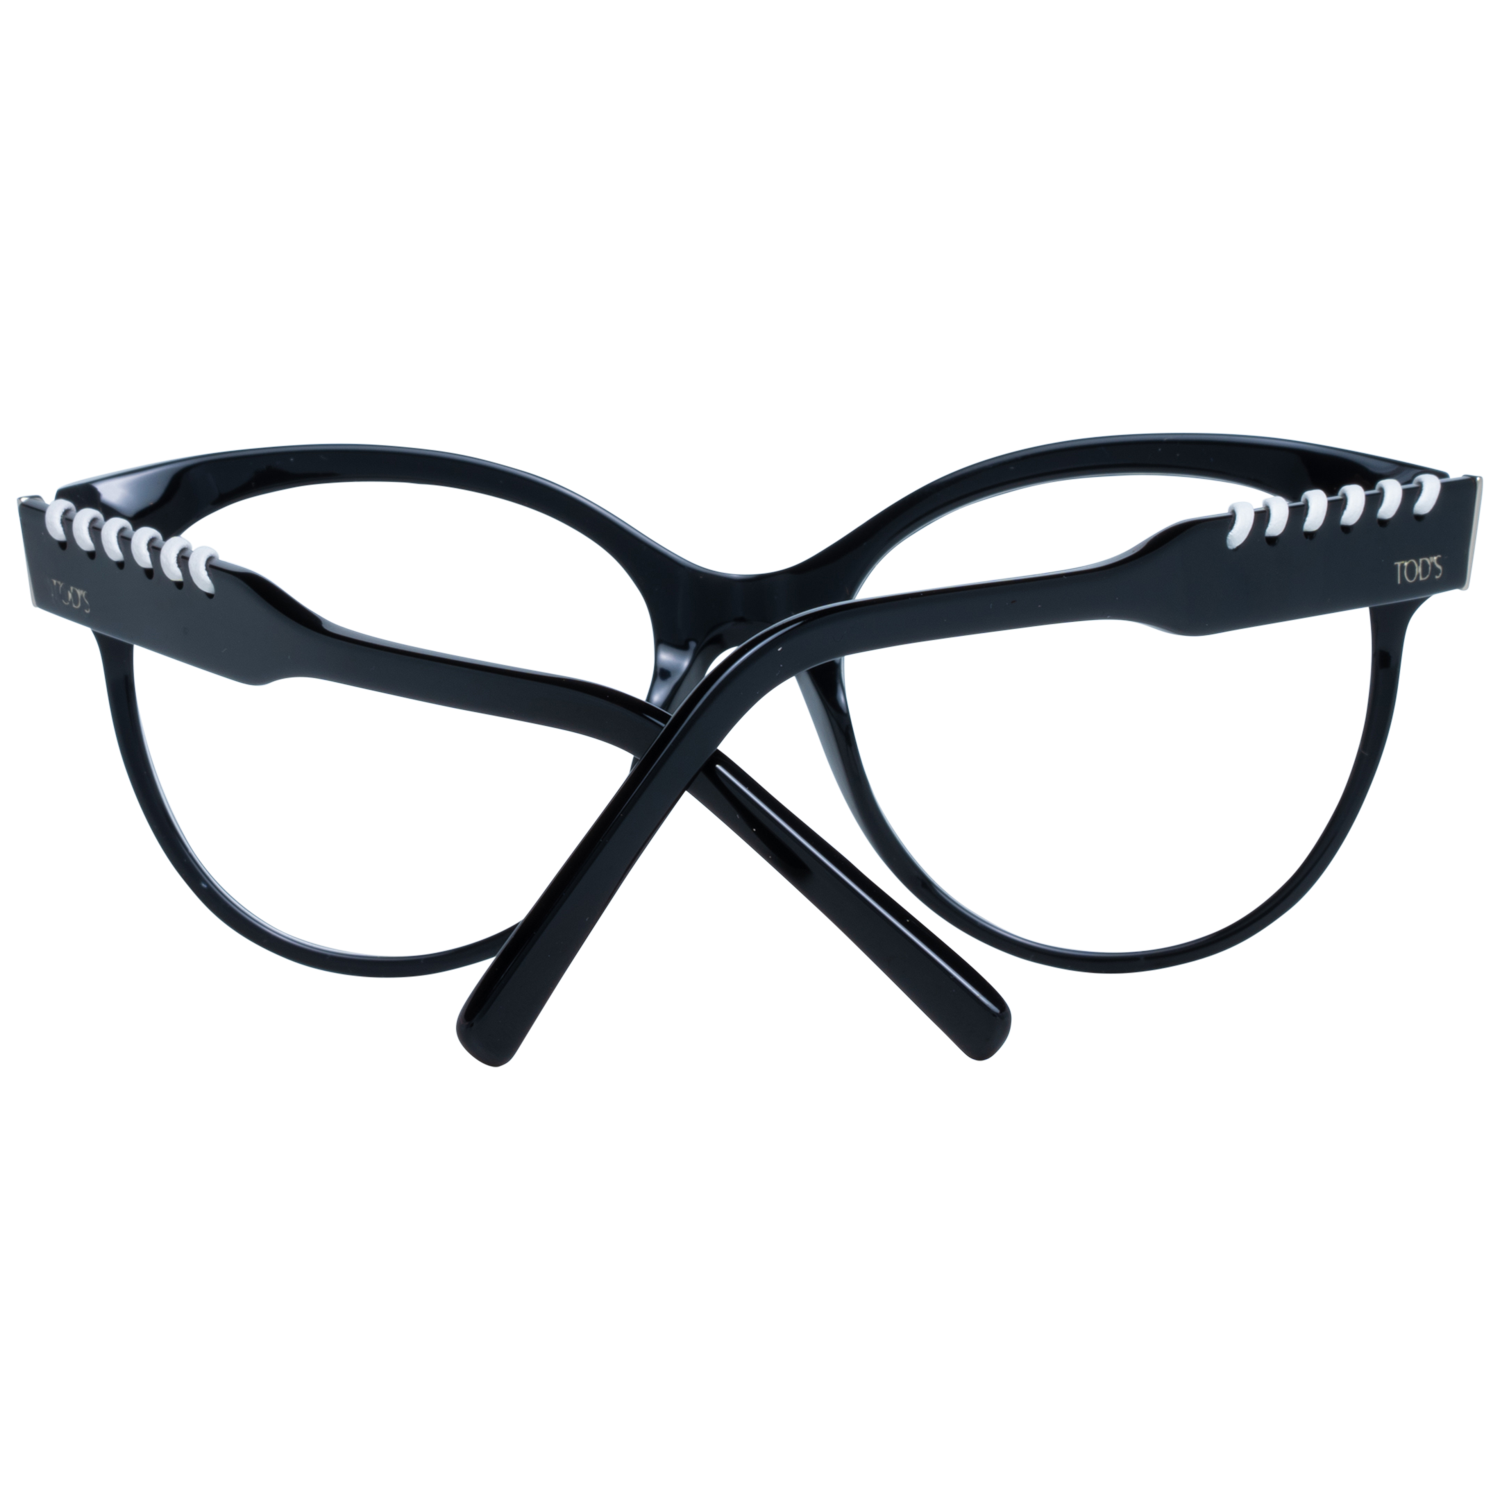 Tods Frames Tods Glasses Women's Black Cat-Eye Frames TO5226 001 55mm Eyeglasses Eyewear UK USA Australia 